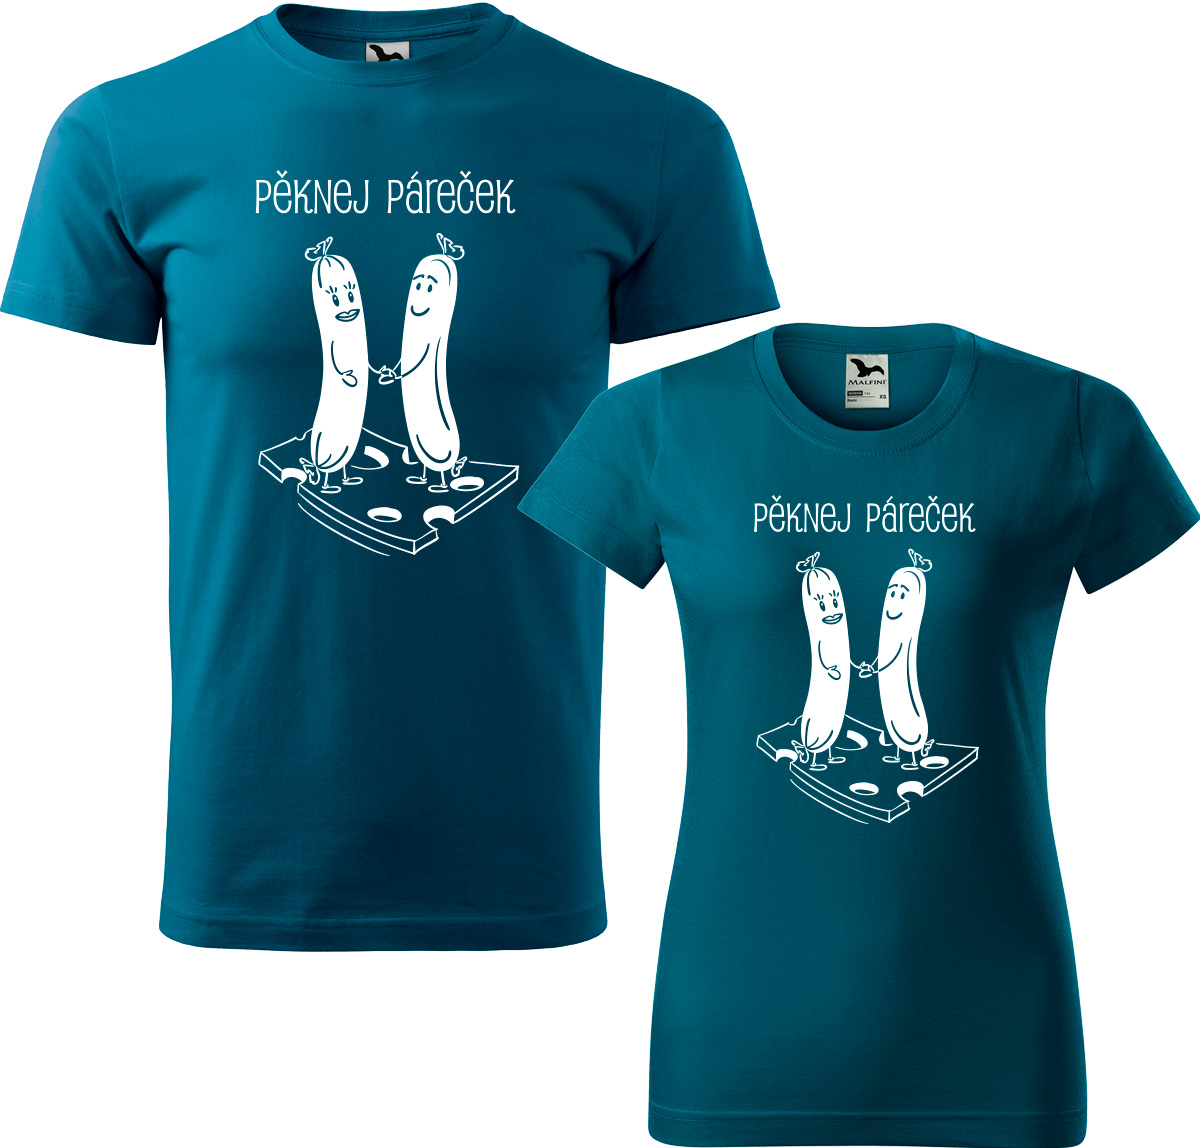 Trička pro páry - Pěknej páreček Barva: Petrolejová (93), Velikost dámské tričko: L, Velikost pánské tričko: XL